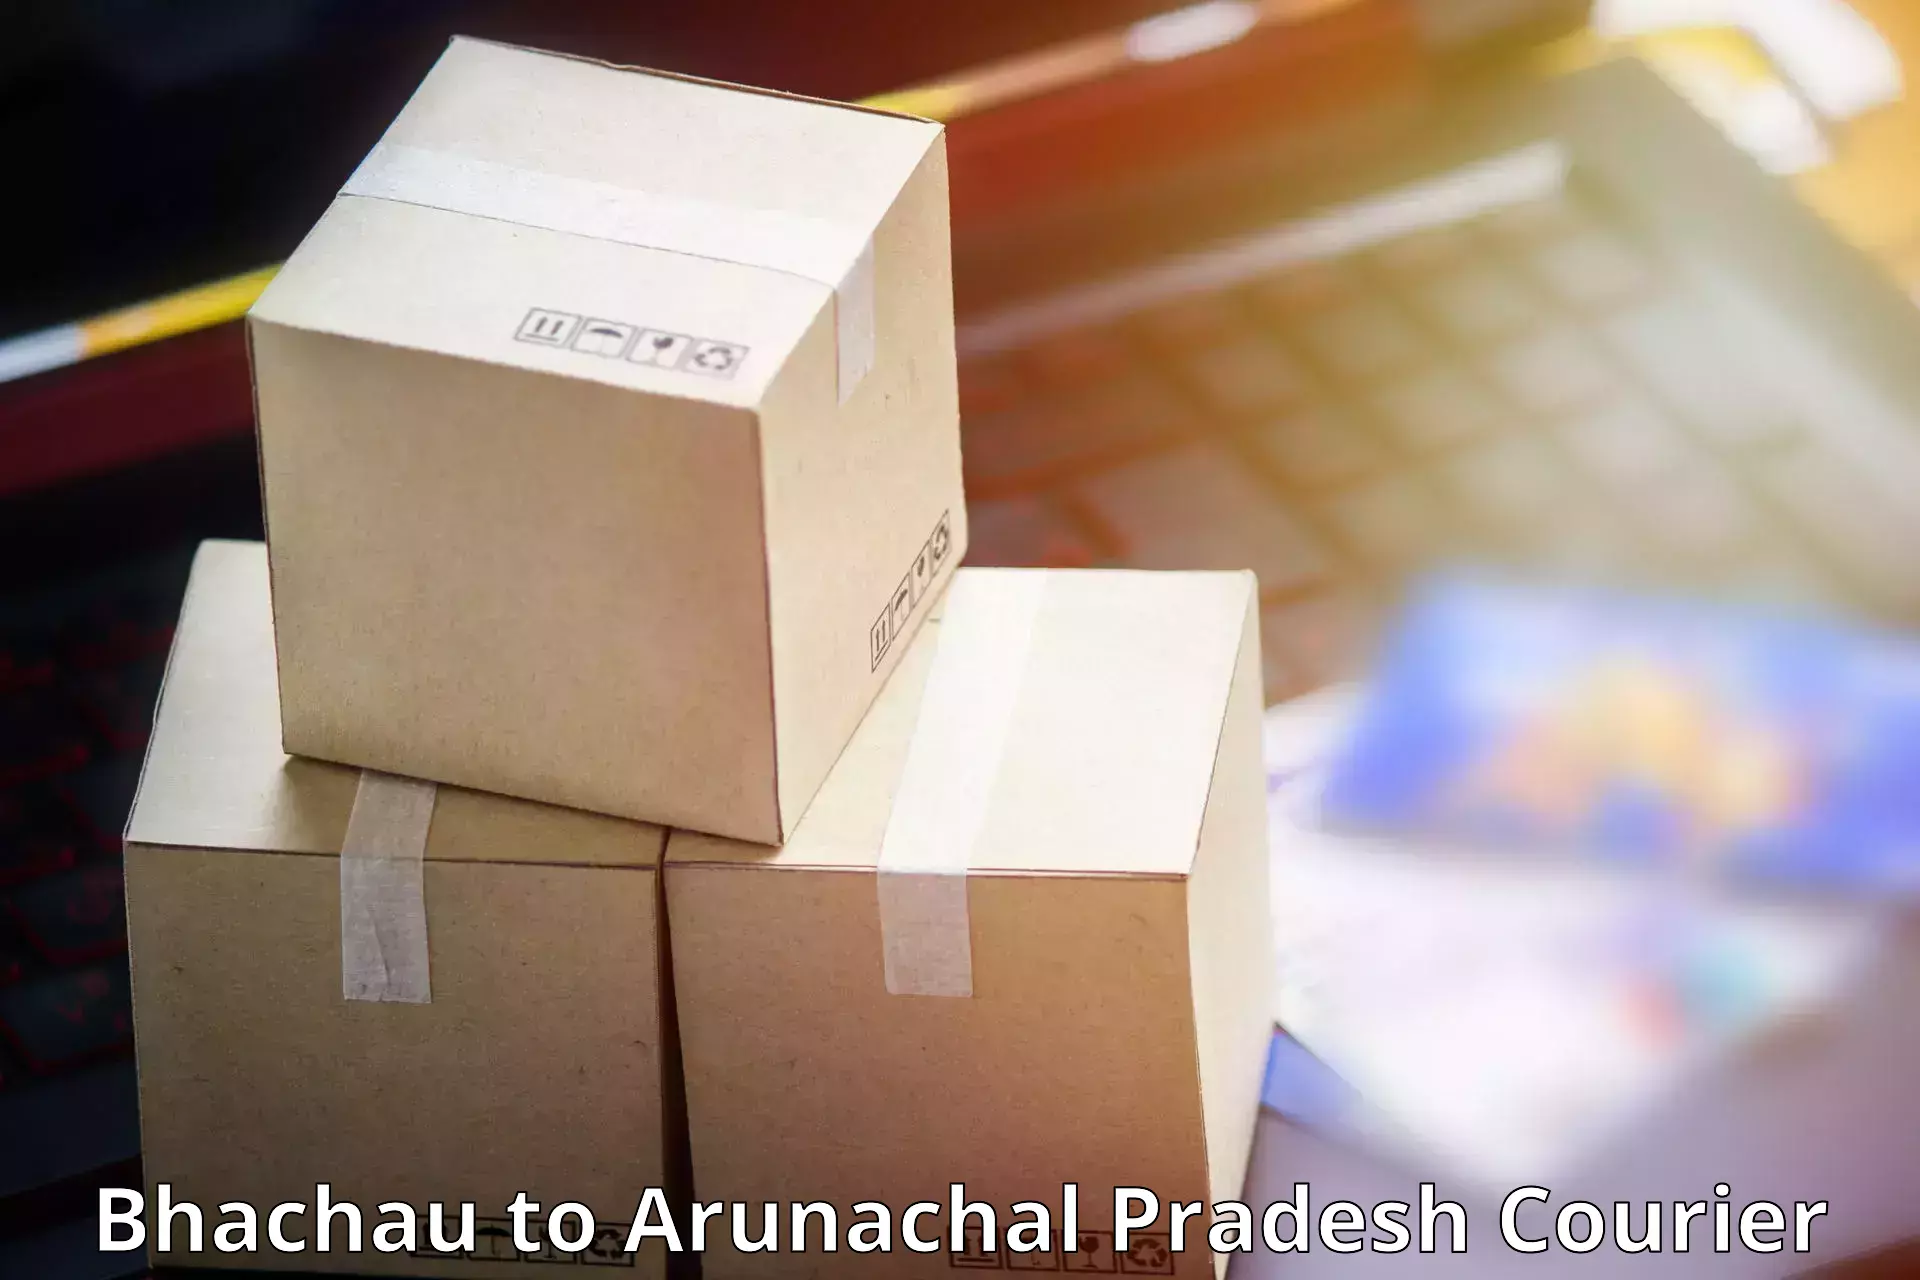 Efficient freight service Bhachau to Upper Subansiri